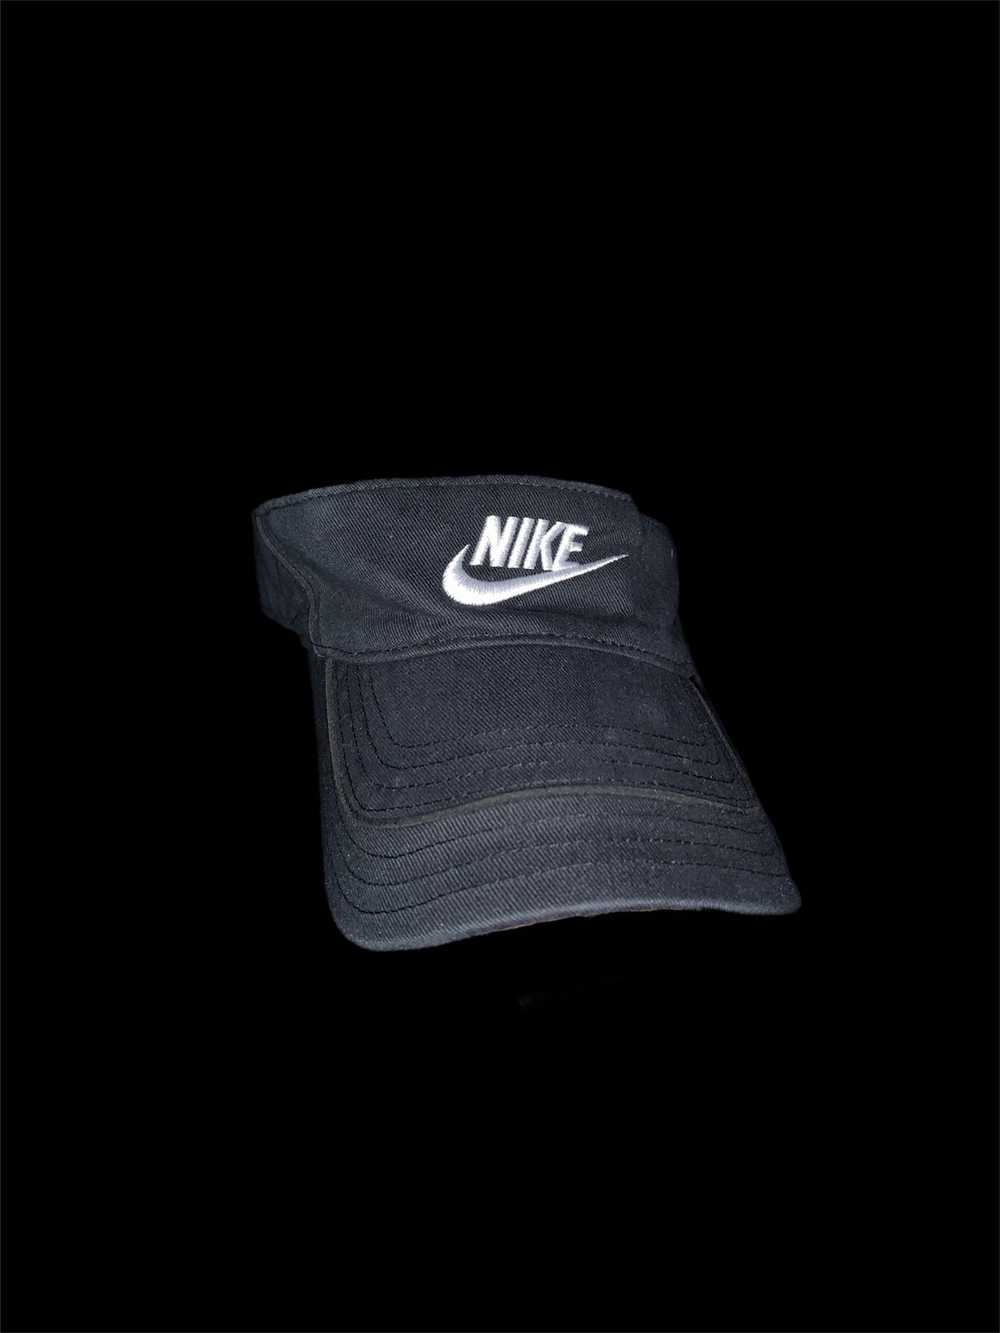 Nike × Streetwear × Vintage Vintage Nike Visor Hat - image 1